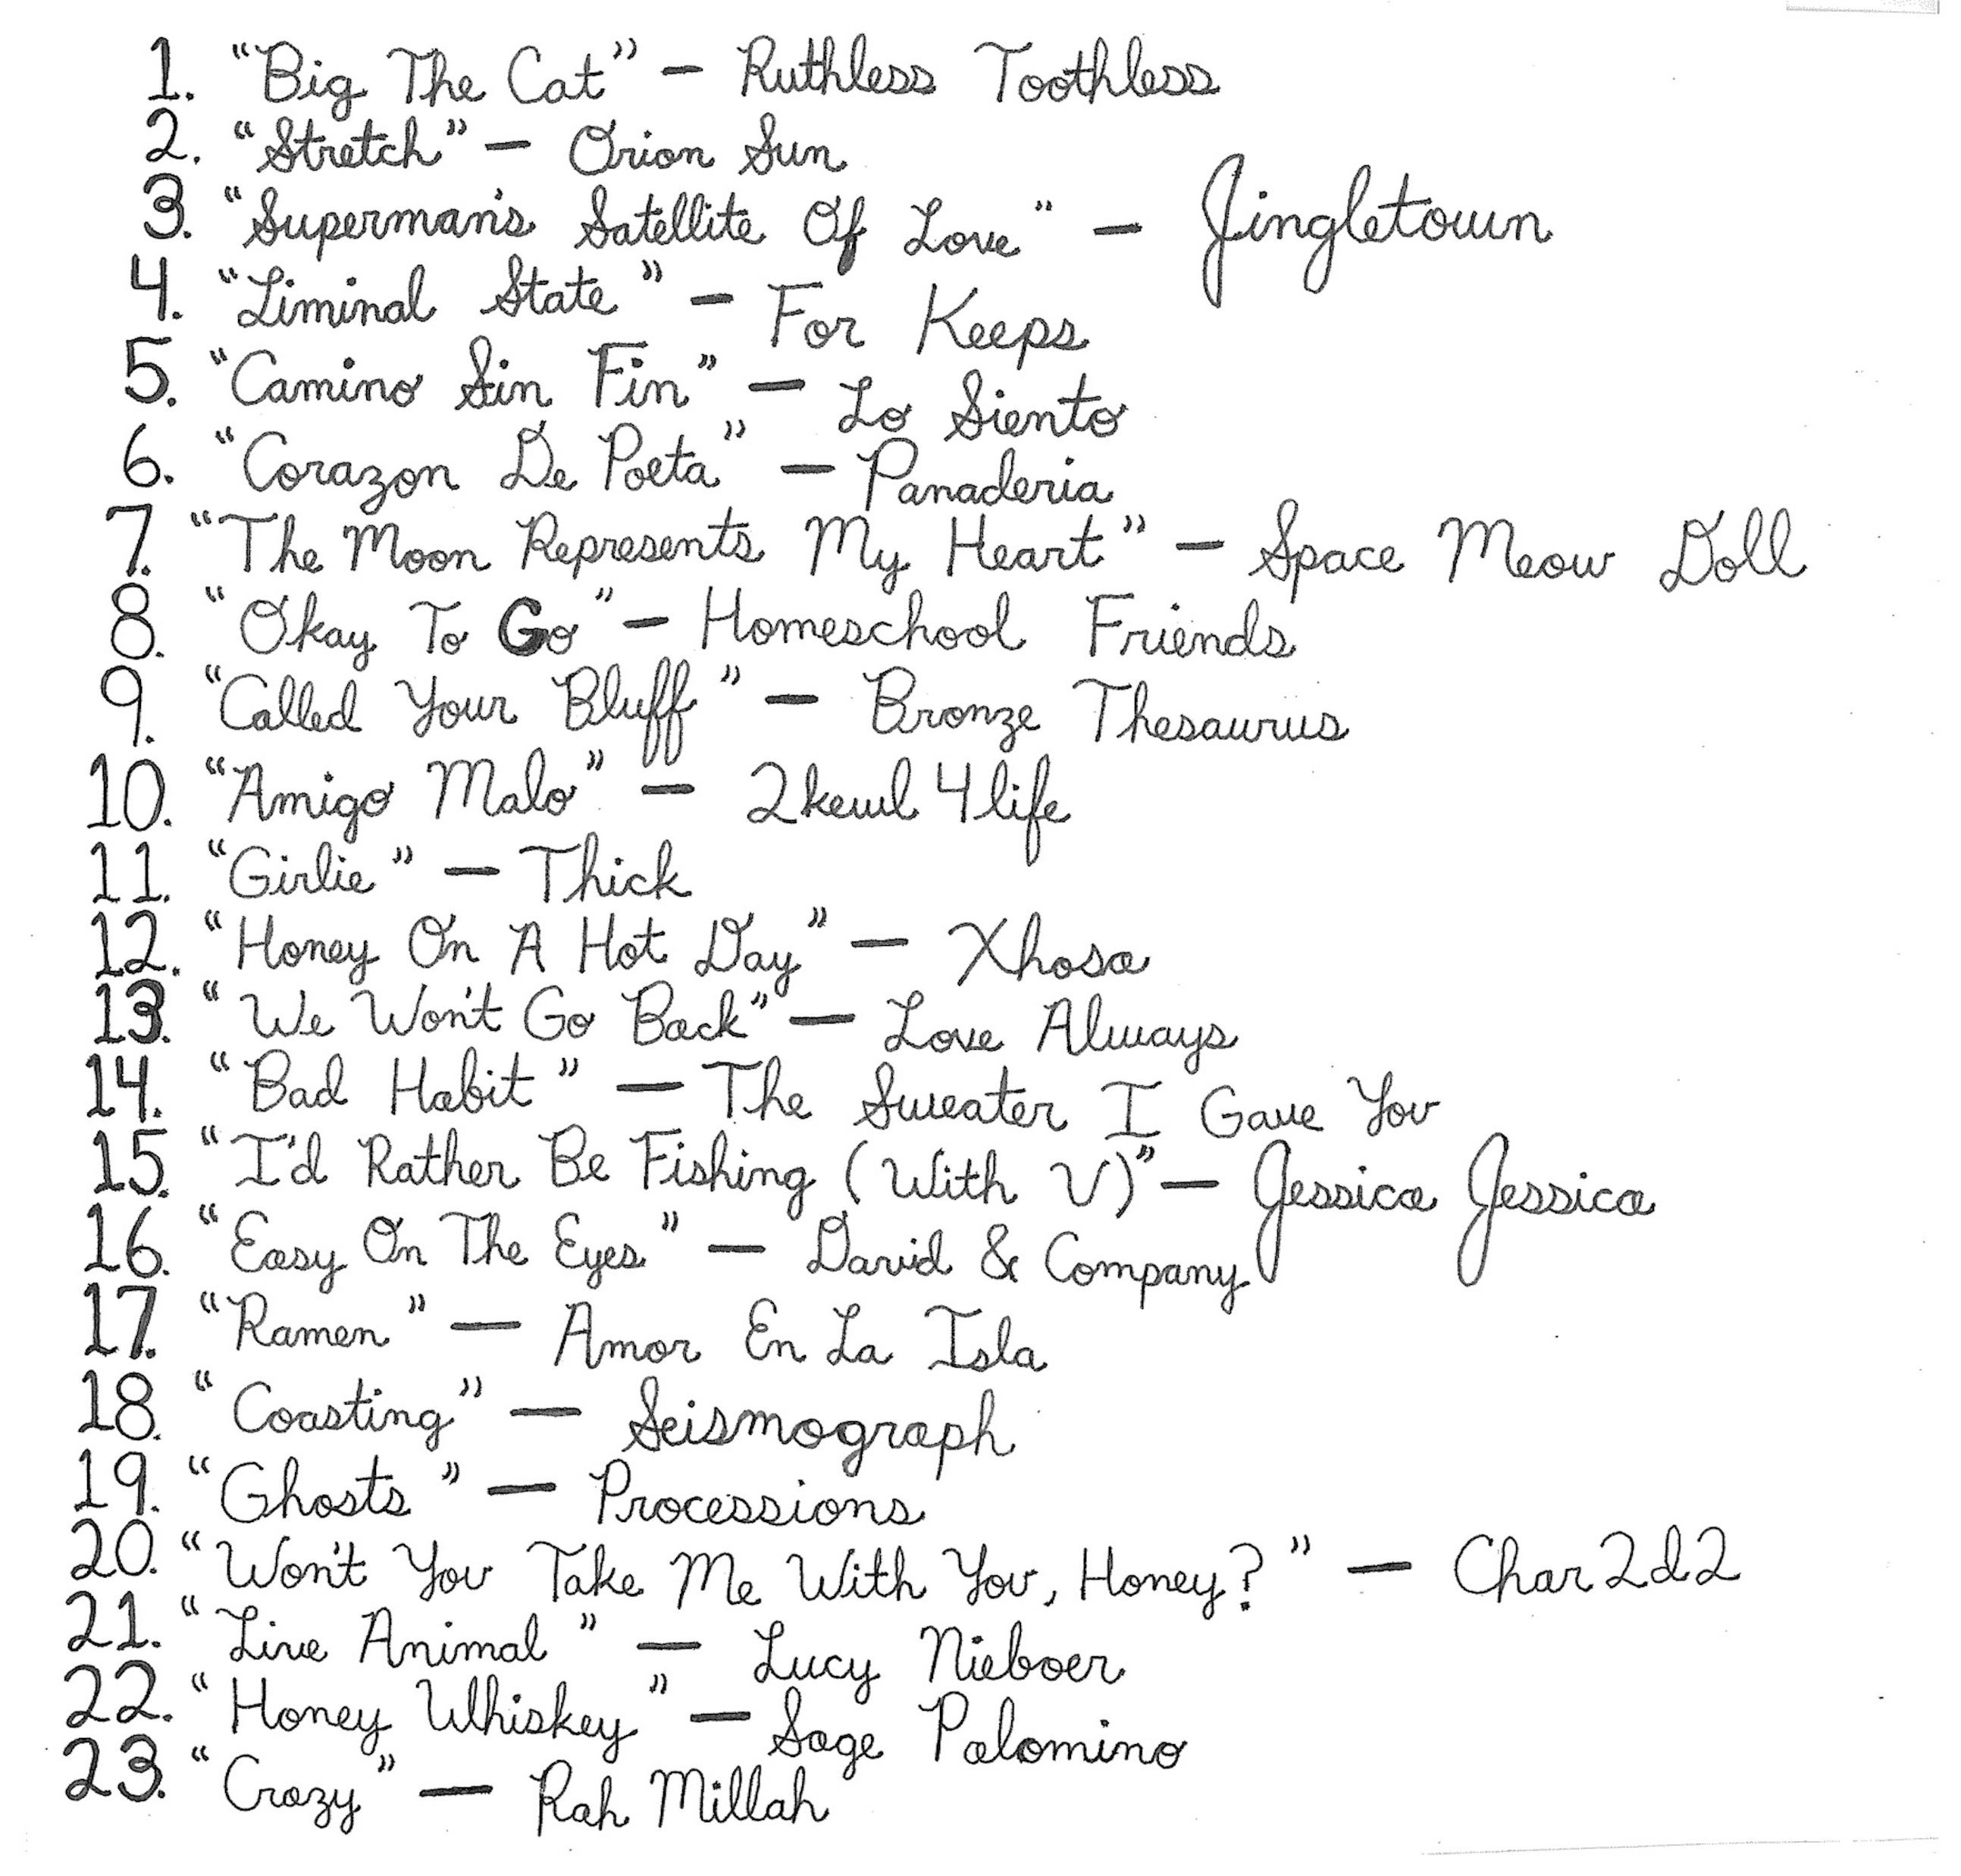 Volume 3 tracklist